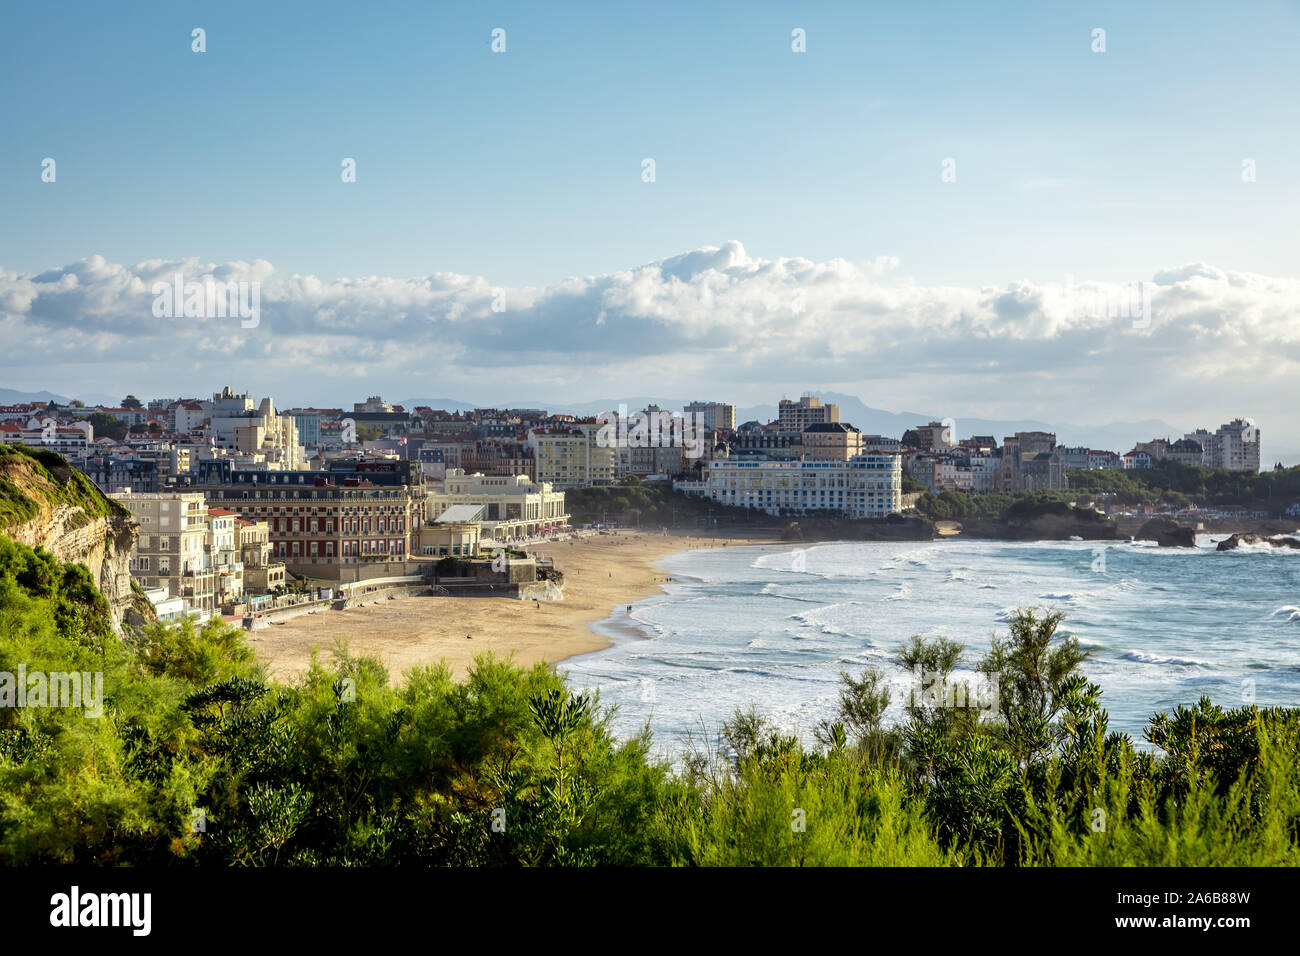 Biarritz, Francia - 06 de septiembre de 2019 - Vista de la playa y de la ciudad de Biarritz, la riviera francesa, Francia Foto de stock